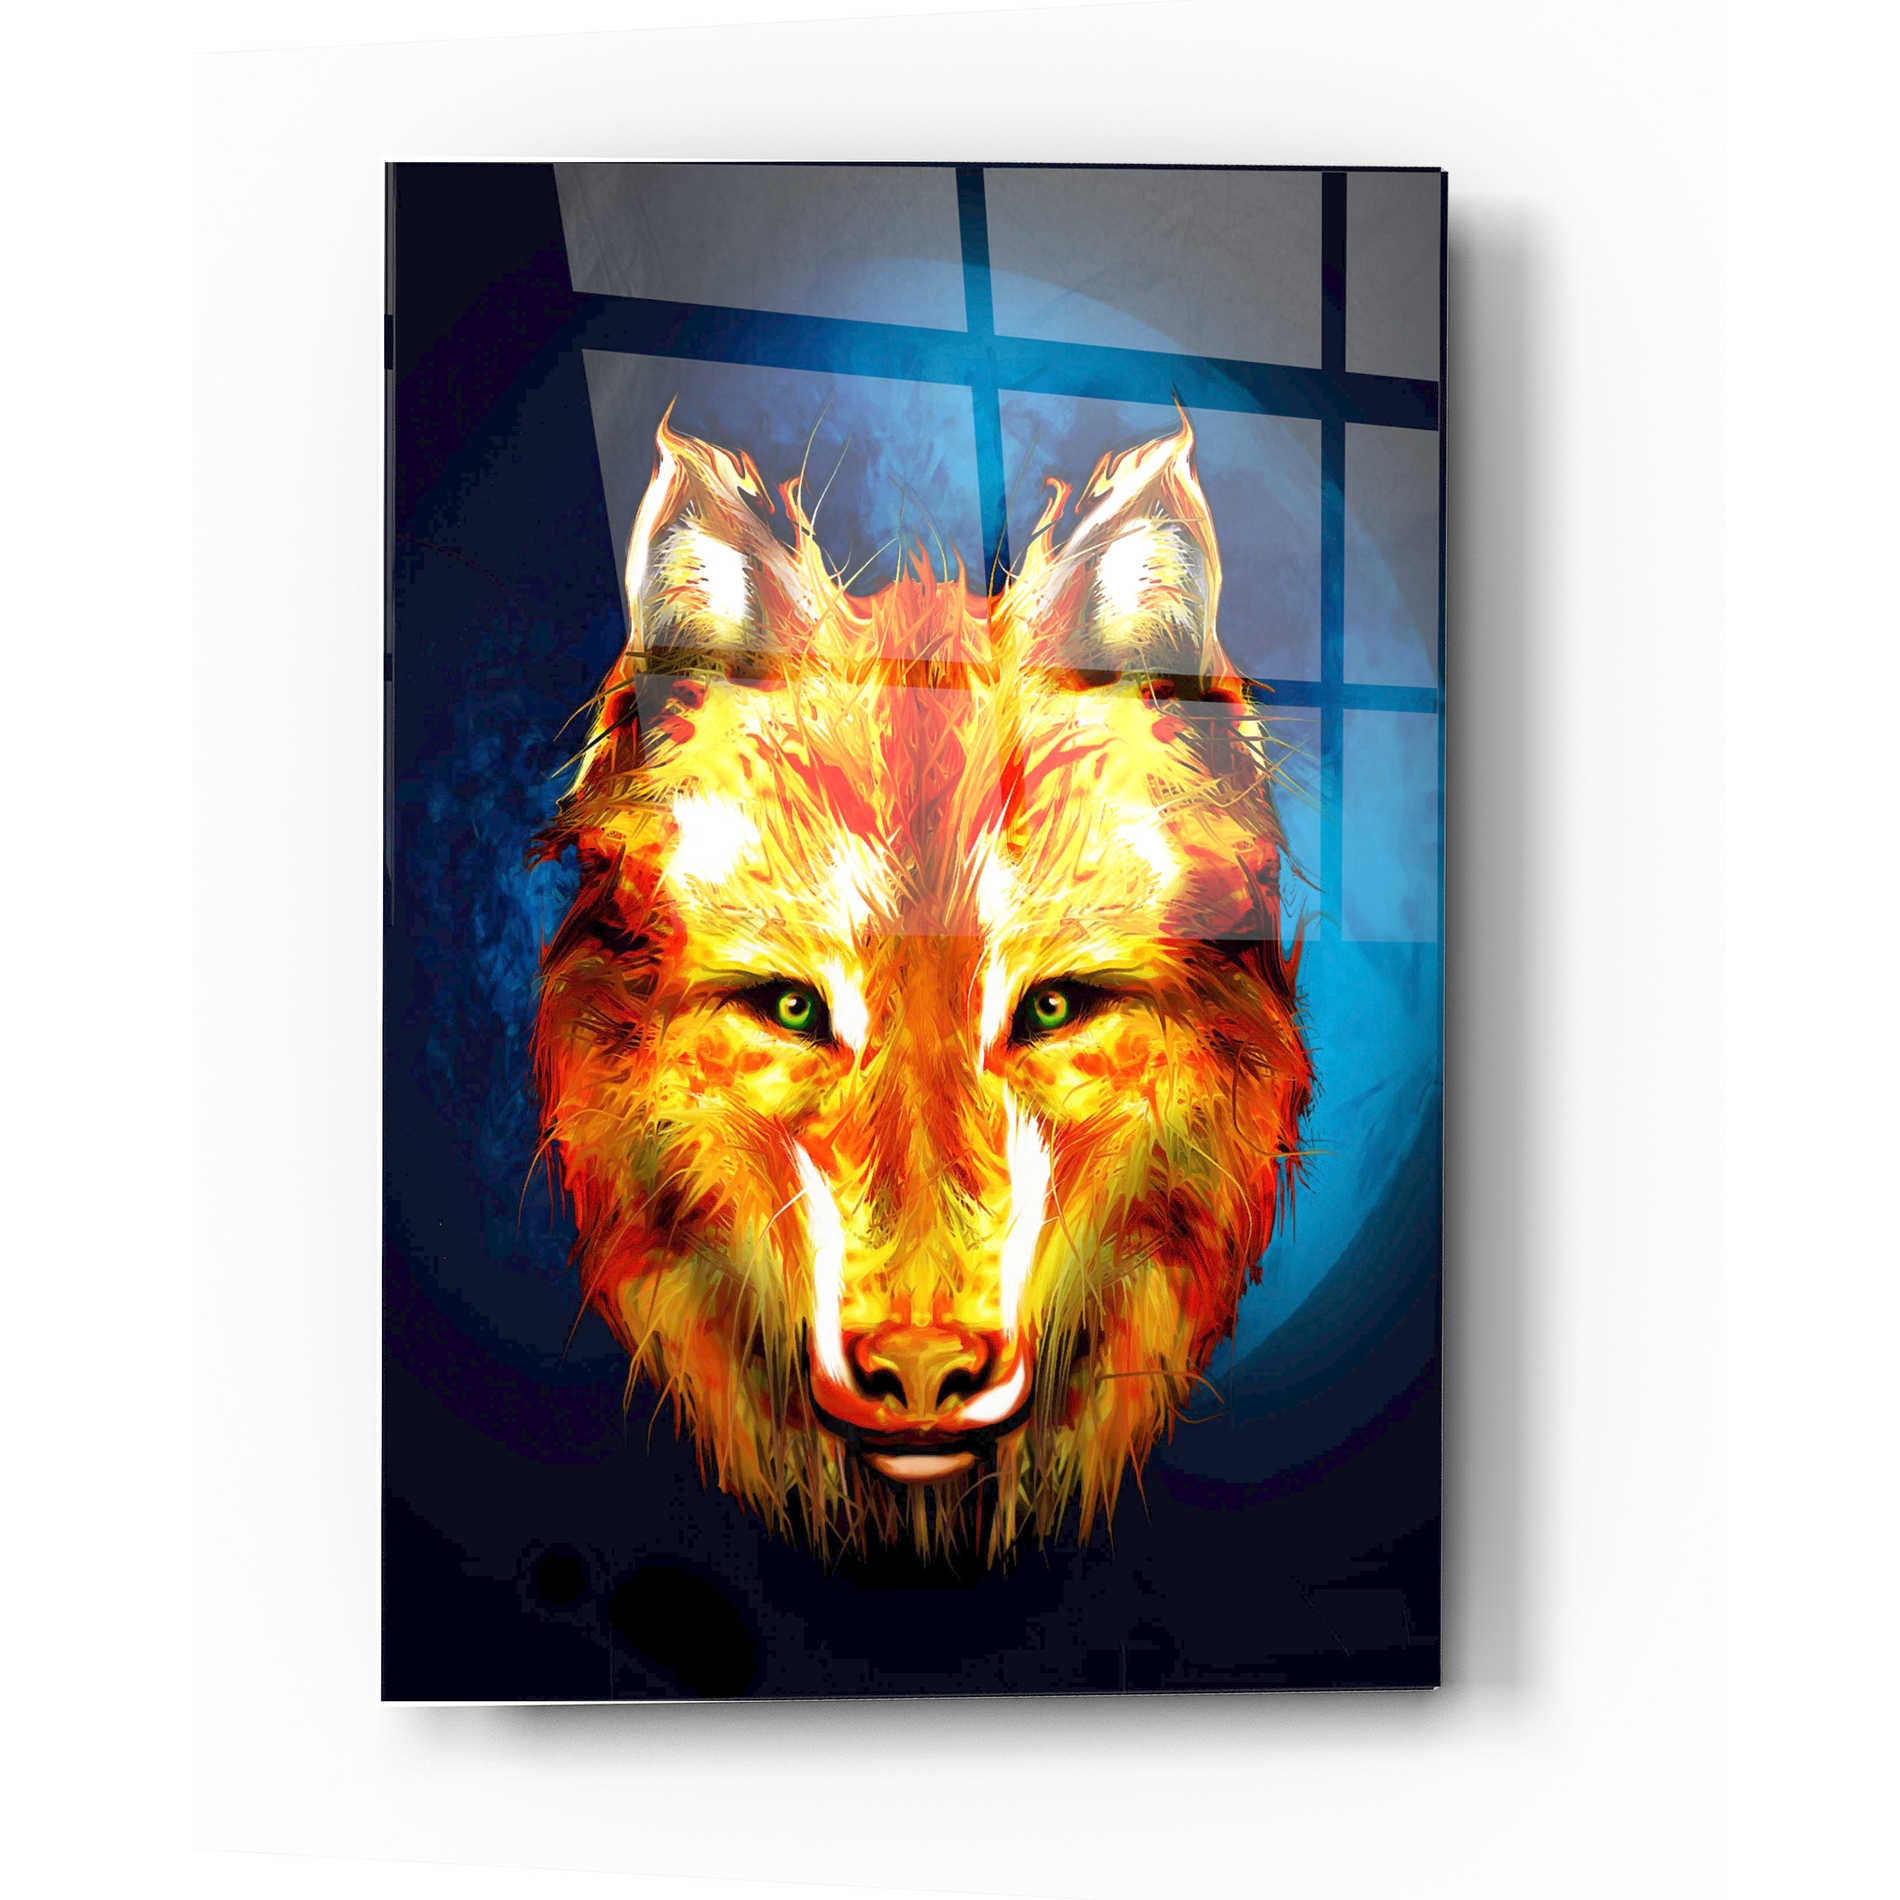 Epic Art 'Lone Wolf' by Michael Stewart, Acrylic Glass Wall Art,16x24